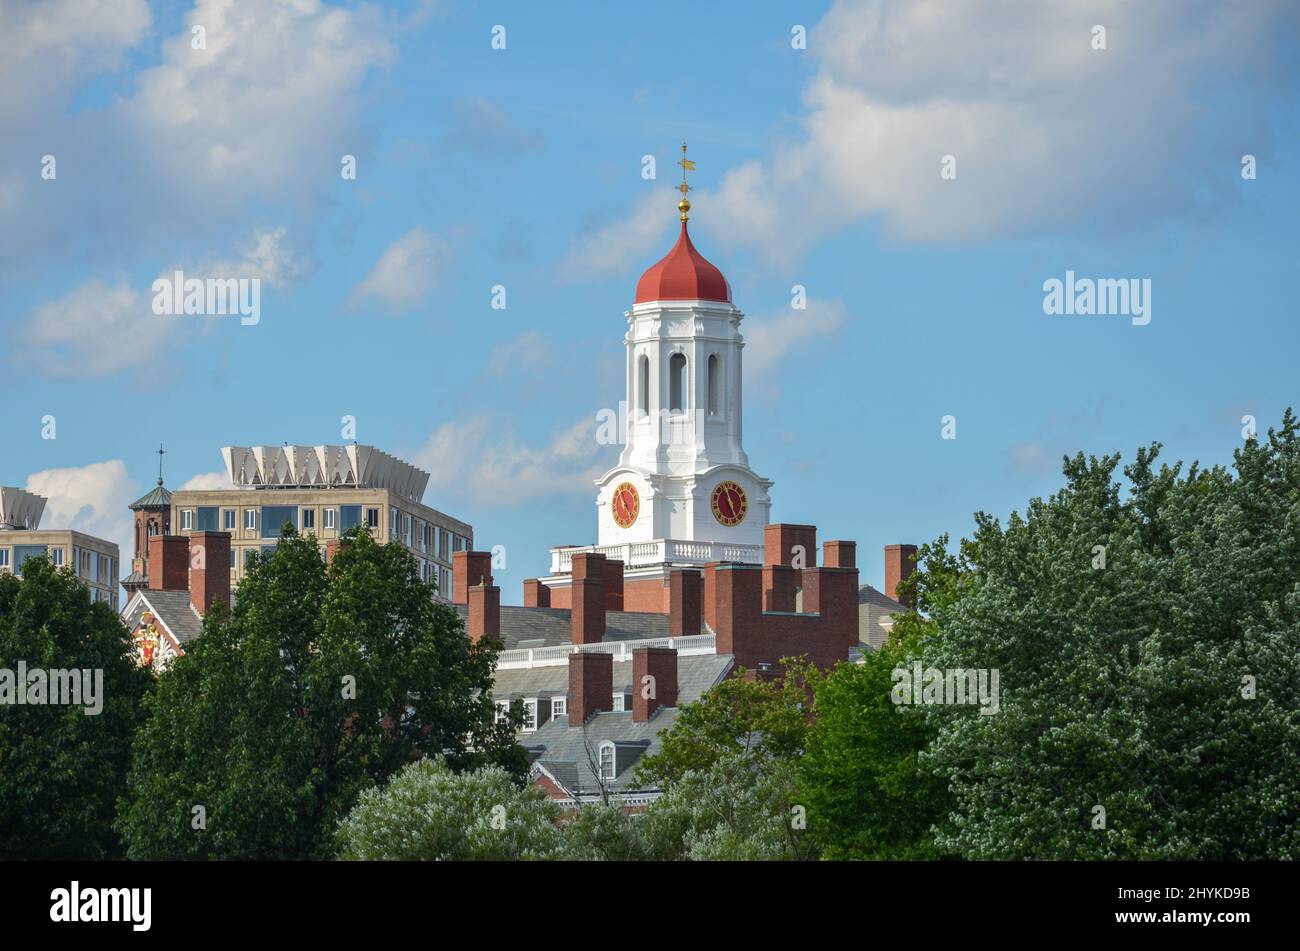 Boston, USA - Agosto 3 2013: Vista attraverso gli alberi fino alla Harvard University Dunster House con il suo tetto a cupola rosso e l'orologio rosso della torre Foto Stock